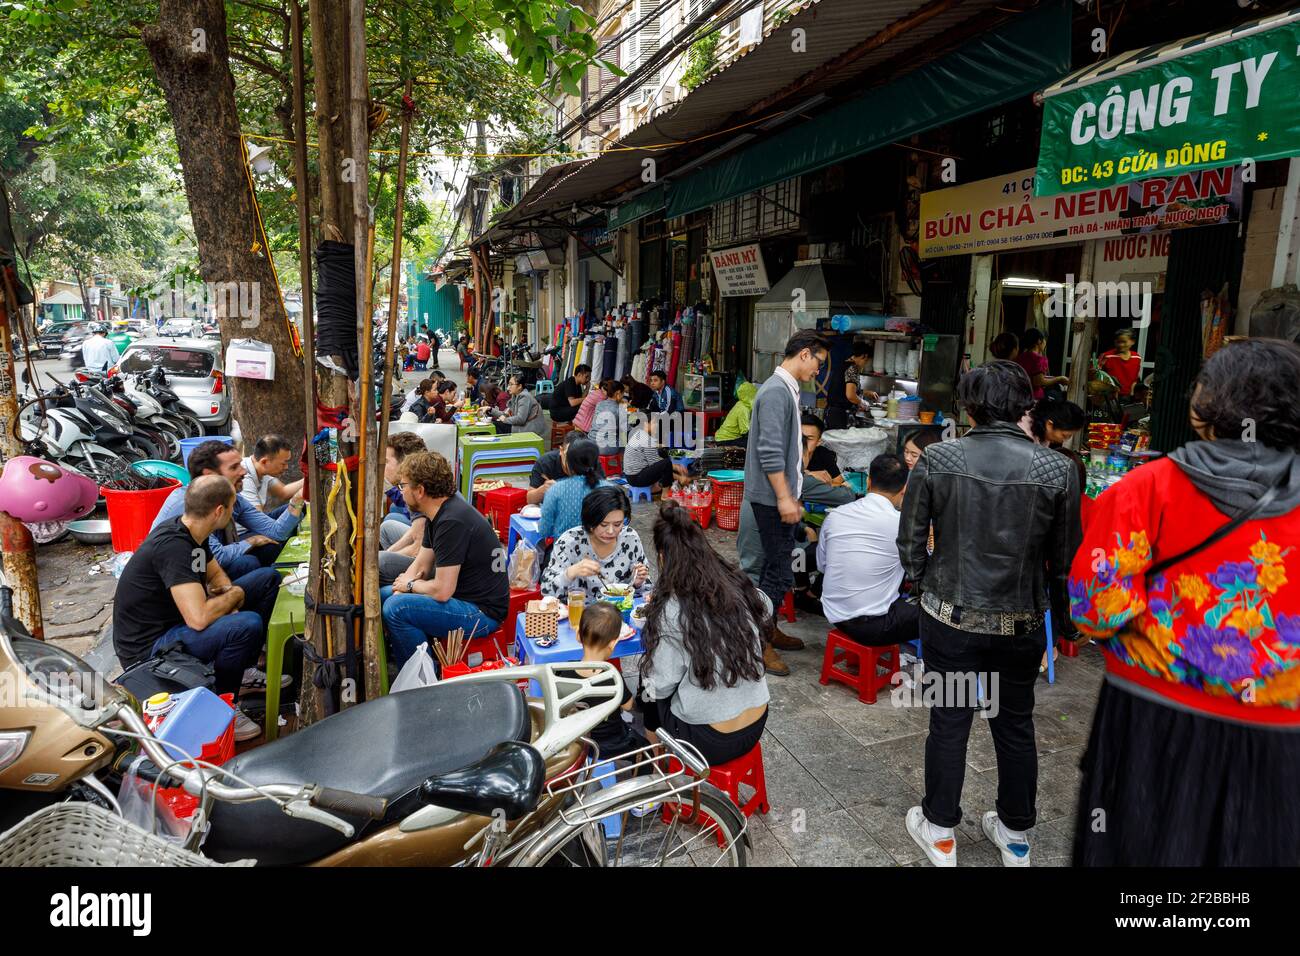 Le style de vie et la vie urbaine de Hanoi au Vietnam Banque D'Images